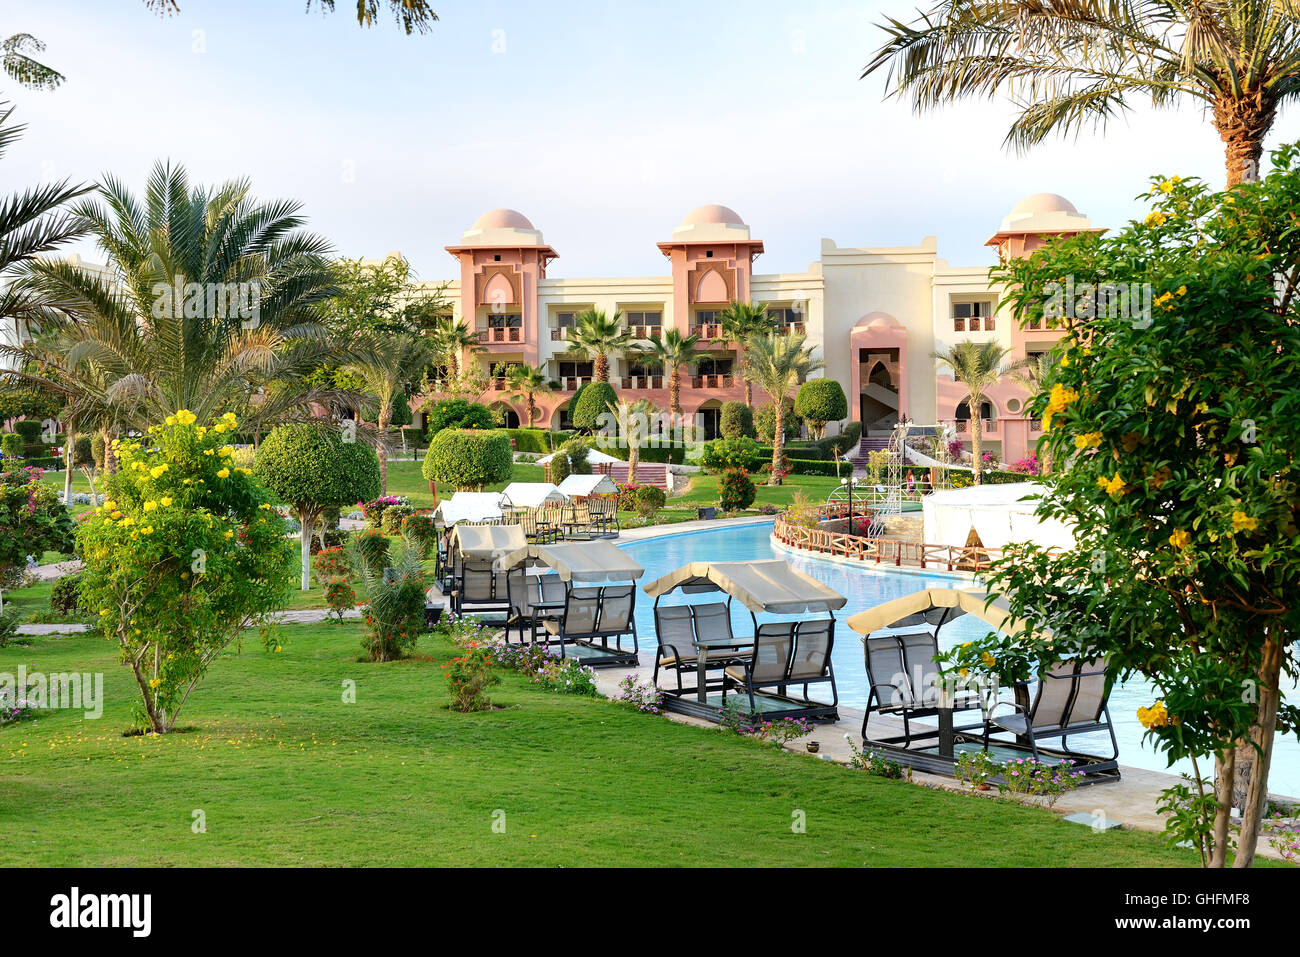 La piscina de hotel de lujo, Hurghada, Egipto Foto de stock